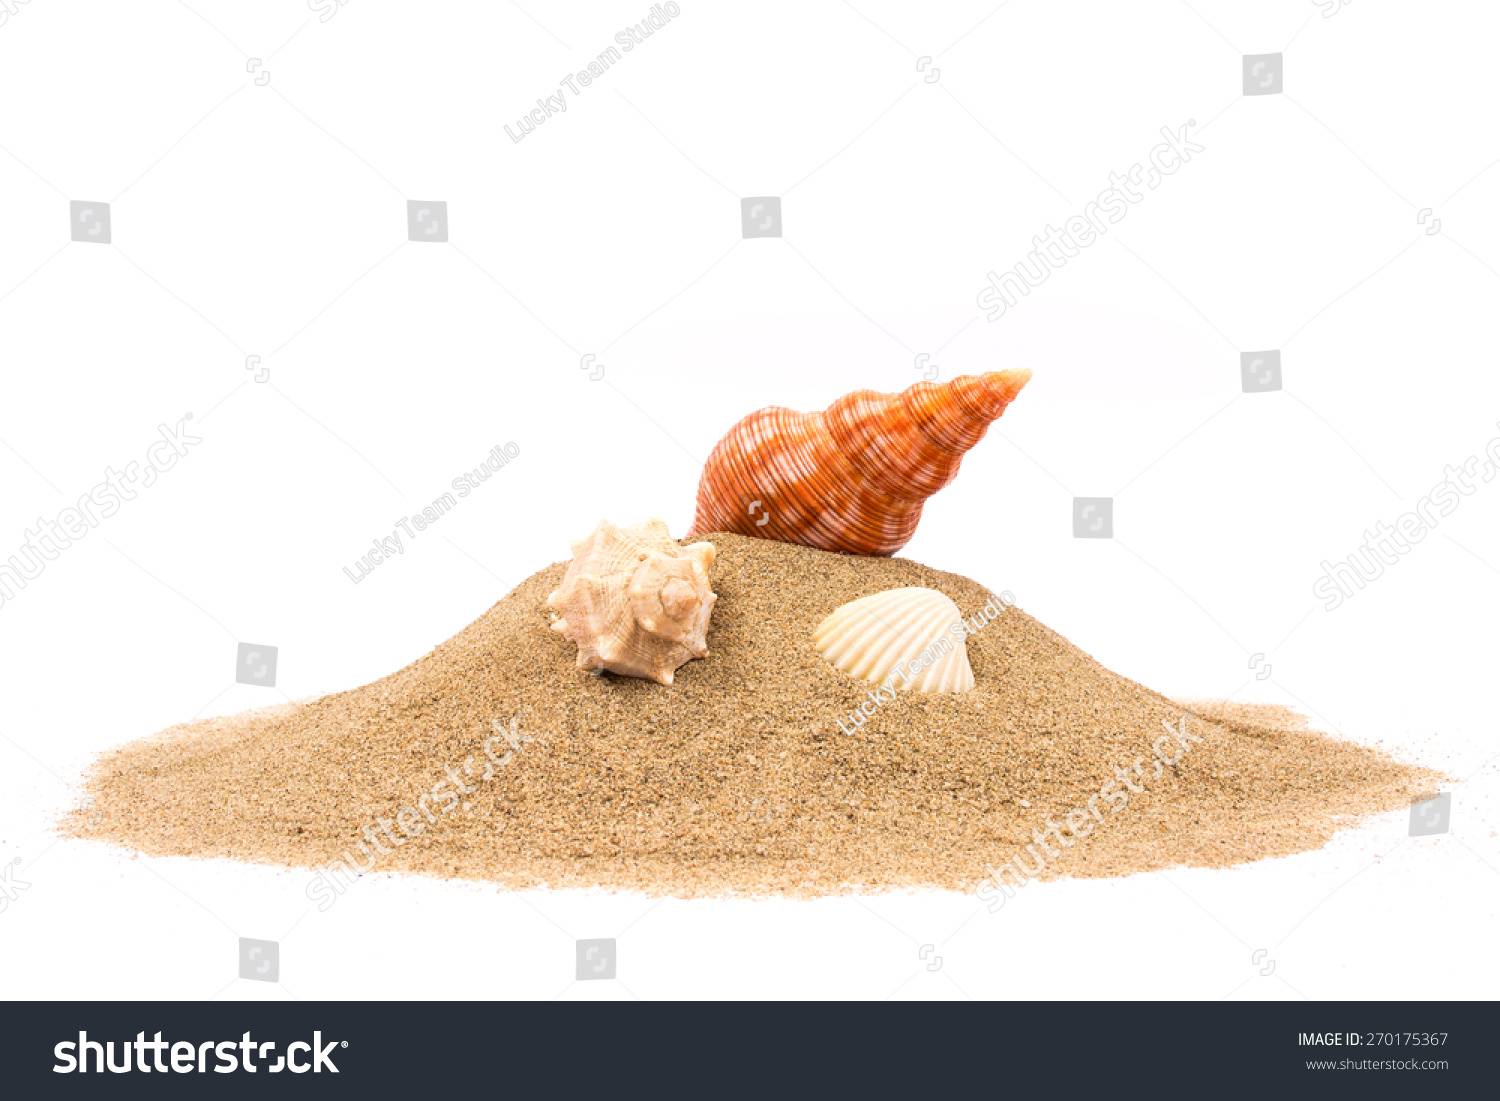 Isolated seashell on sand, white background #270175367